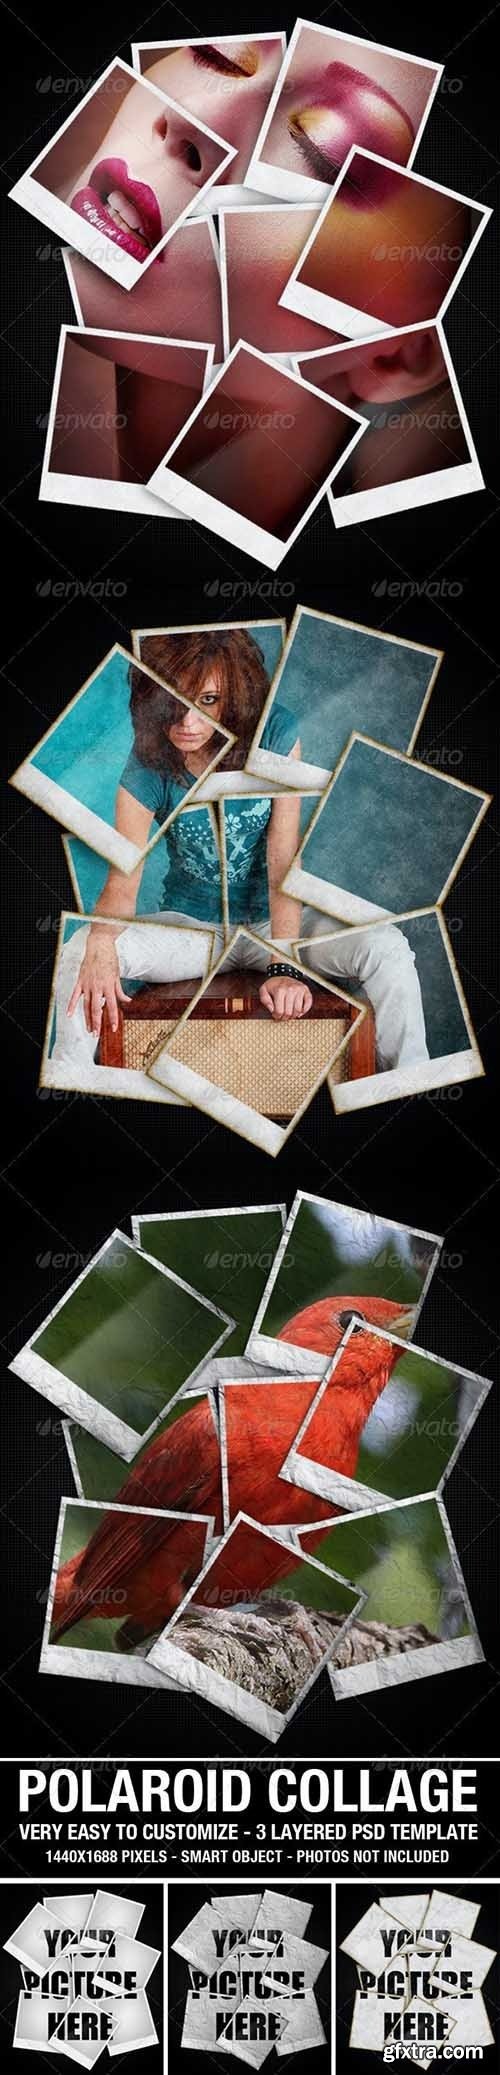 GraphicRiver - Polaroid Collage Photo Template 2627722